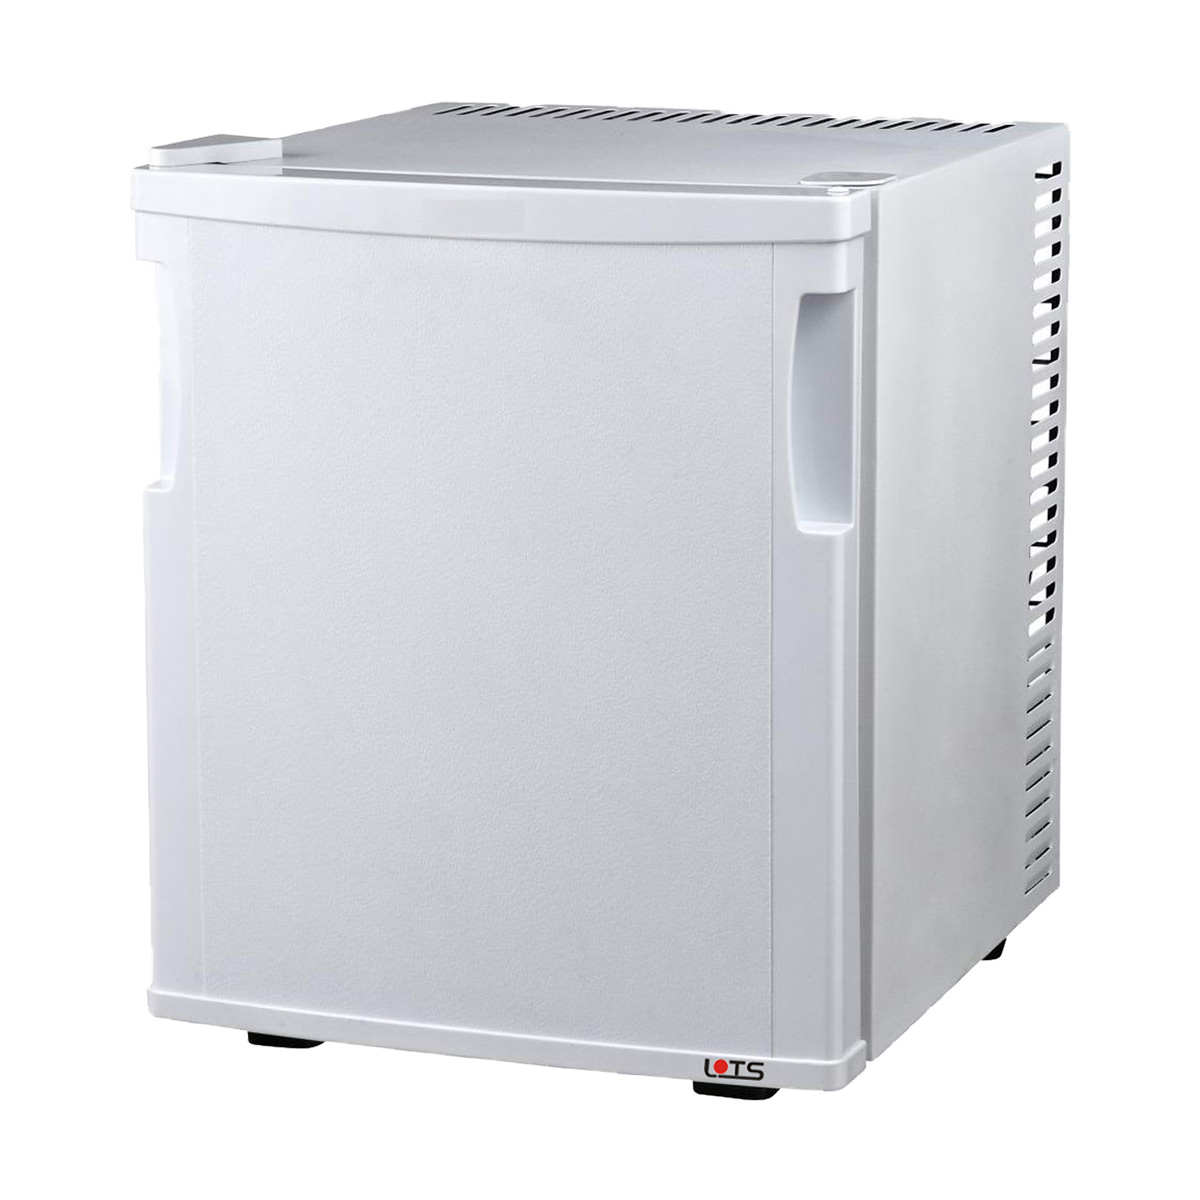 LOTS ペルチェ式客室用冷蔵庫20L_CB-20SA ホワイト